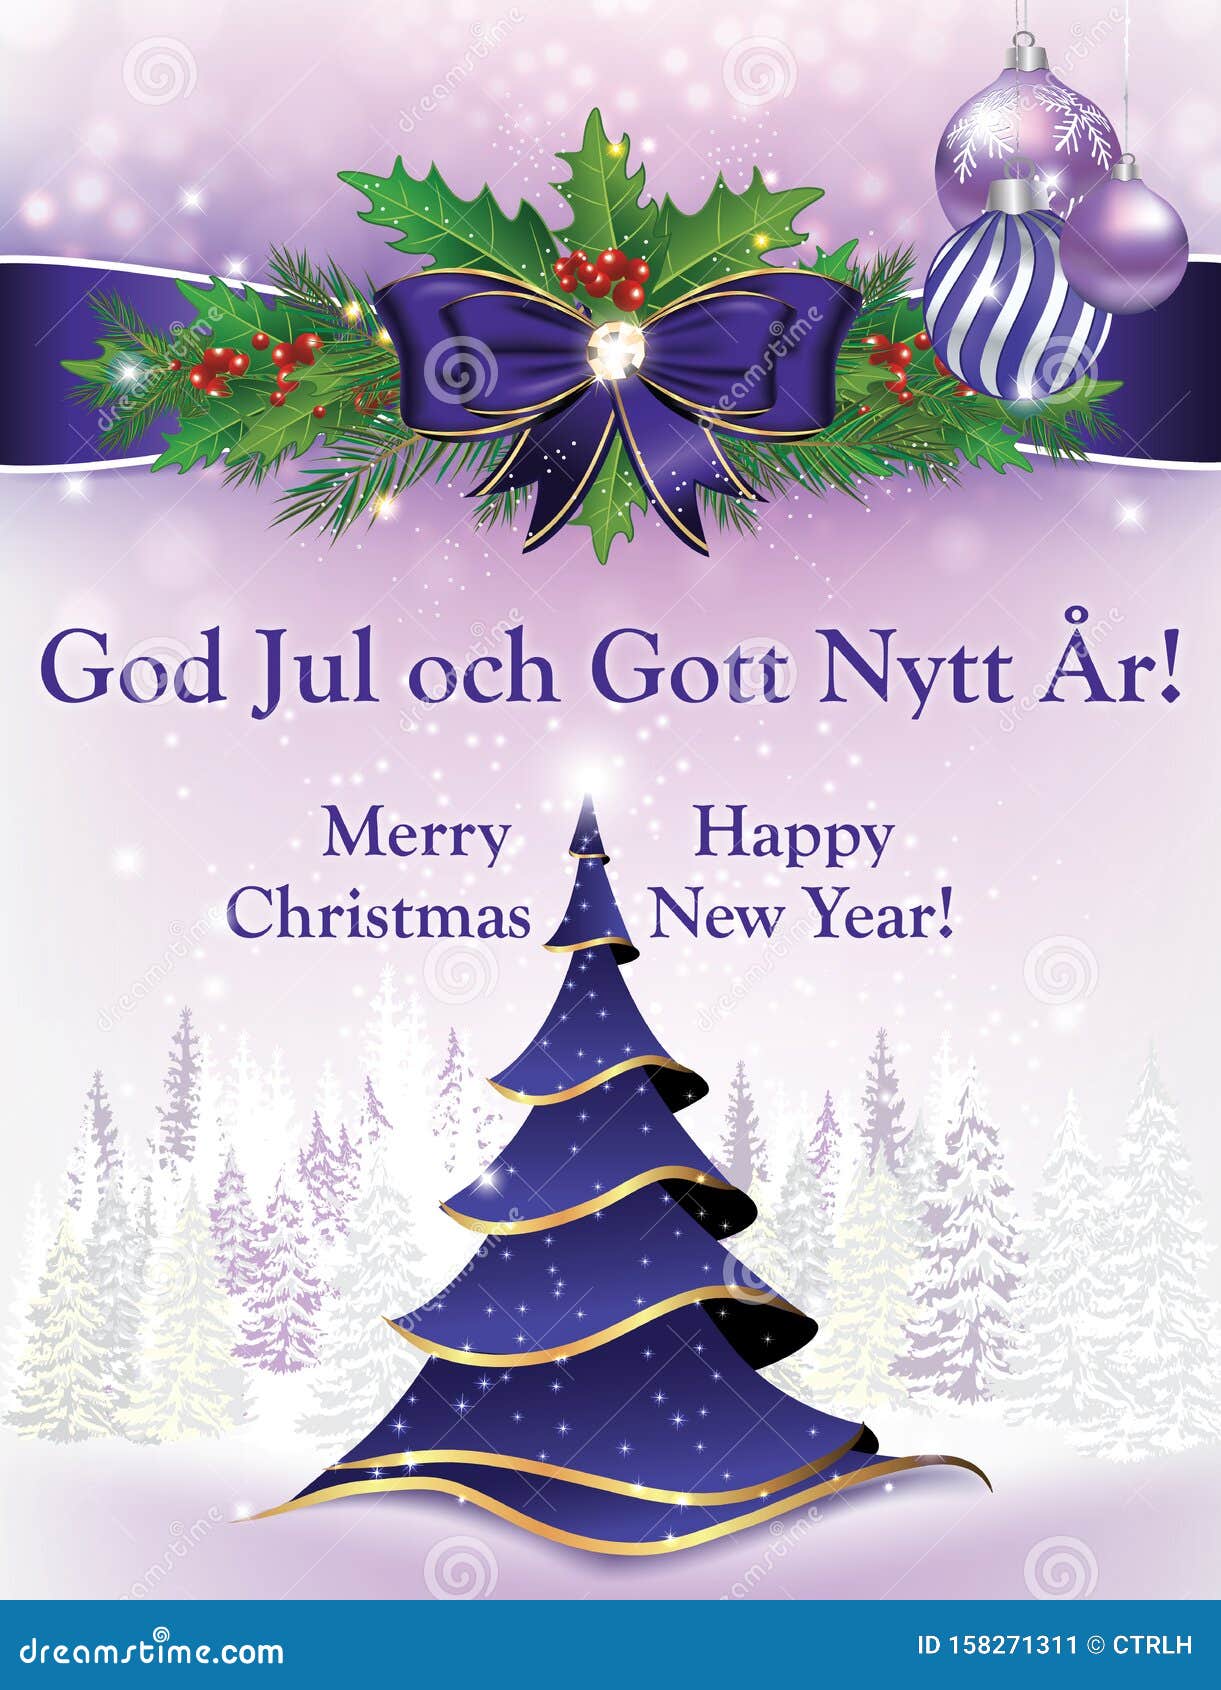 Cartão De Boas-Vindas De Natal E Ano Novo Com Texto Em Inglês E Sueco  Ilustração Stock - Ilustração de azul, comemore: 158271311